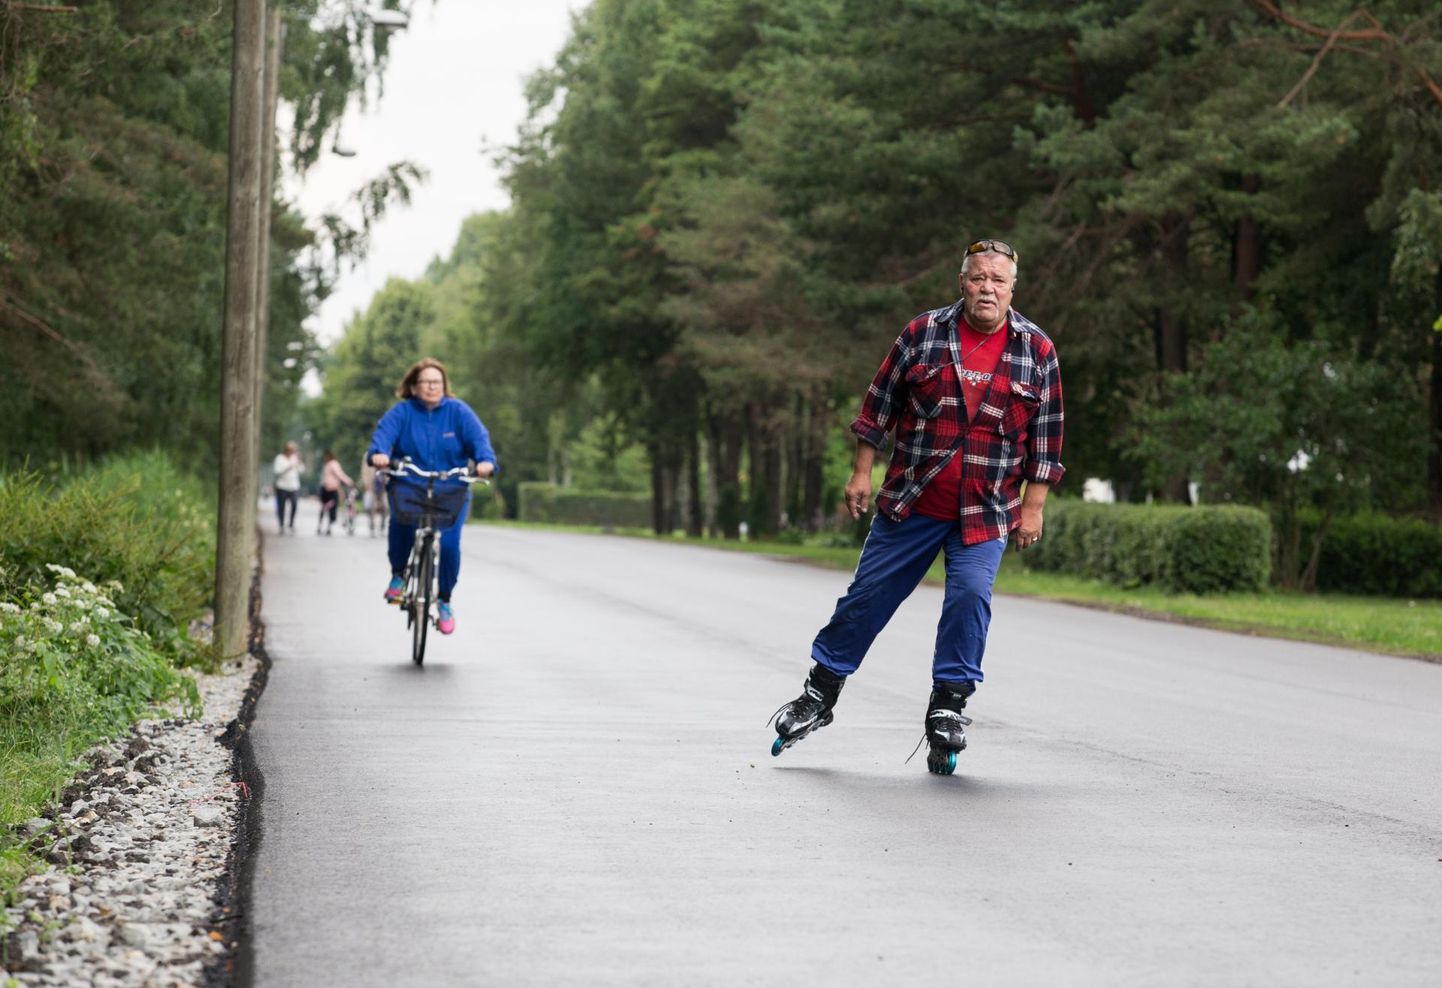 Kuigi ­suvepealinna südalinna Lottemaaga ühendav kergliiklustee pole veel valmis, saavad inimesed juba sellel liikumist nautida Pärnus Kalevi puiesteel.